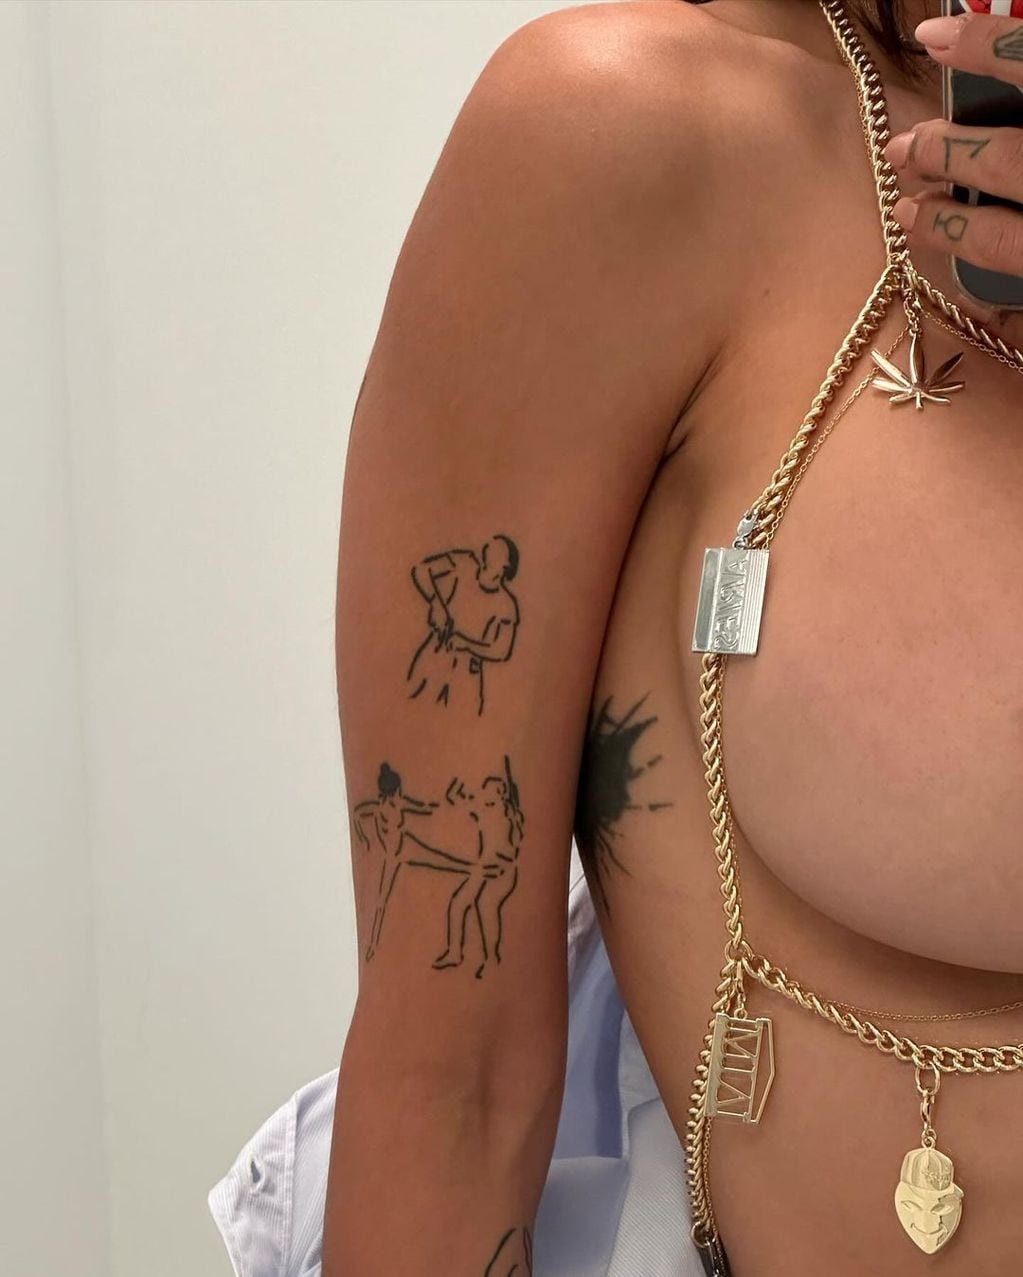 Mia Khalifa paralizó las redes con un look para el infarto